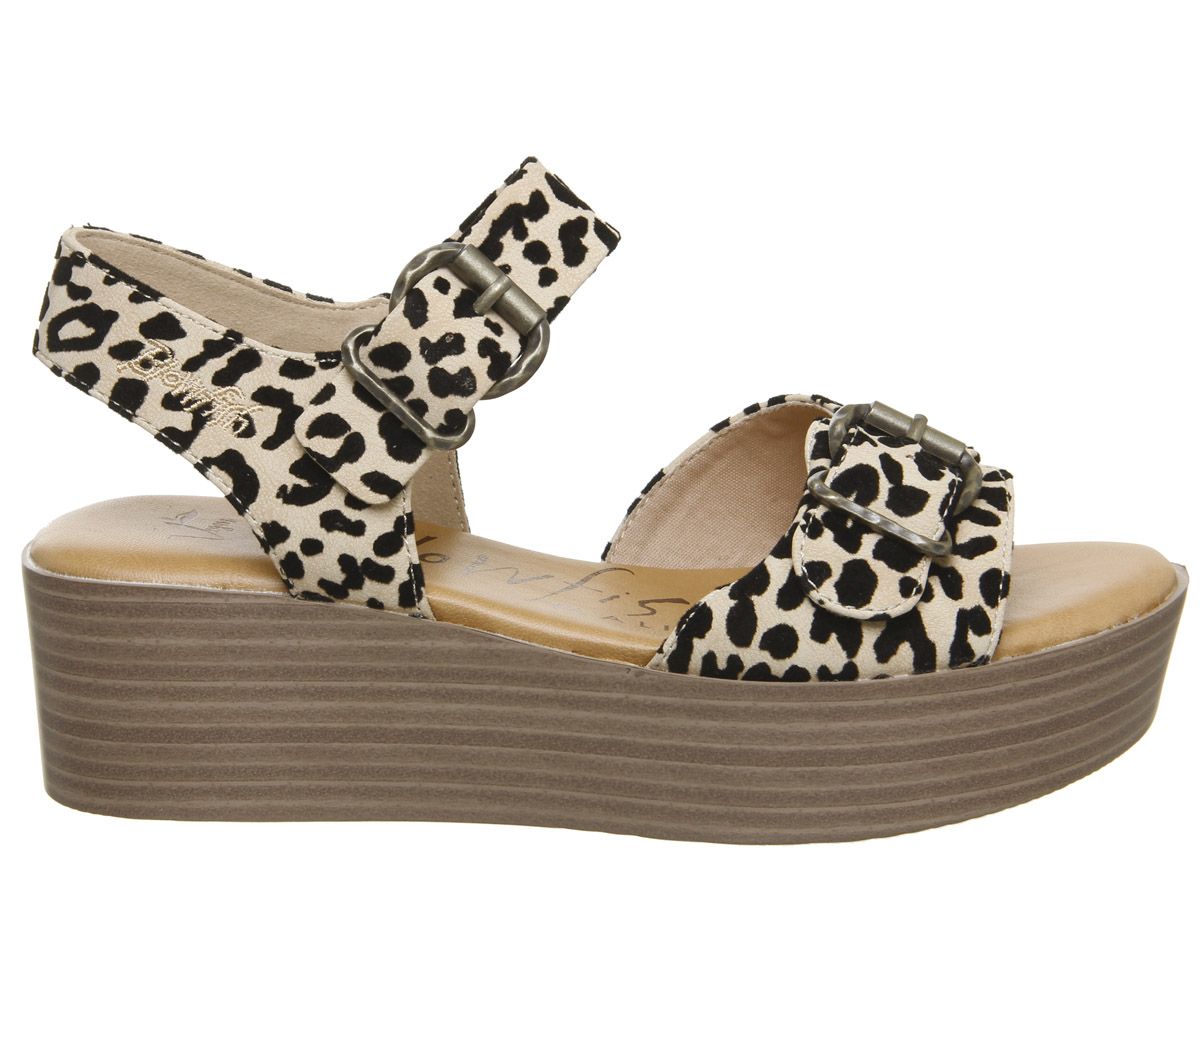 Blowfish Malibu Leeds Sandals Natural Leopard Grasslands - Women’s Sandals